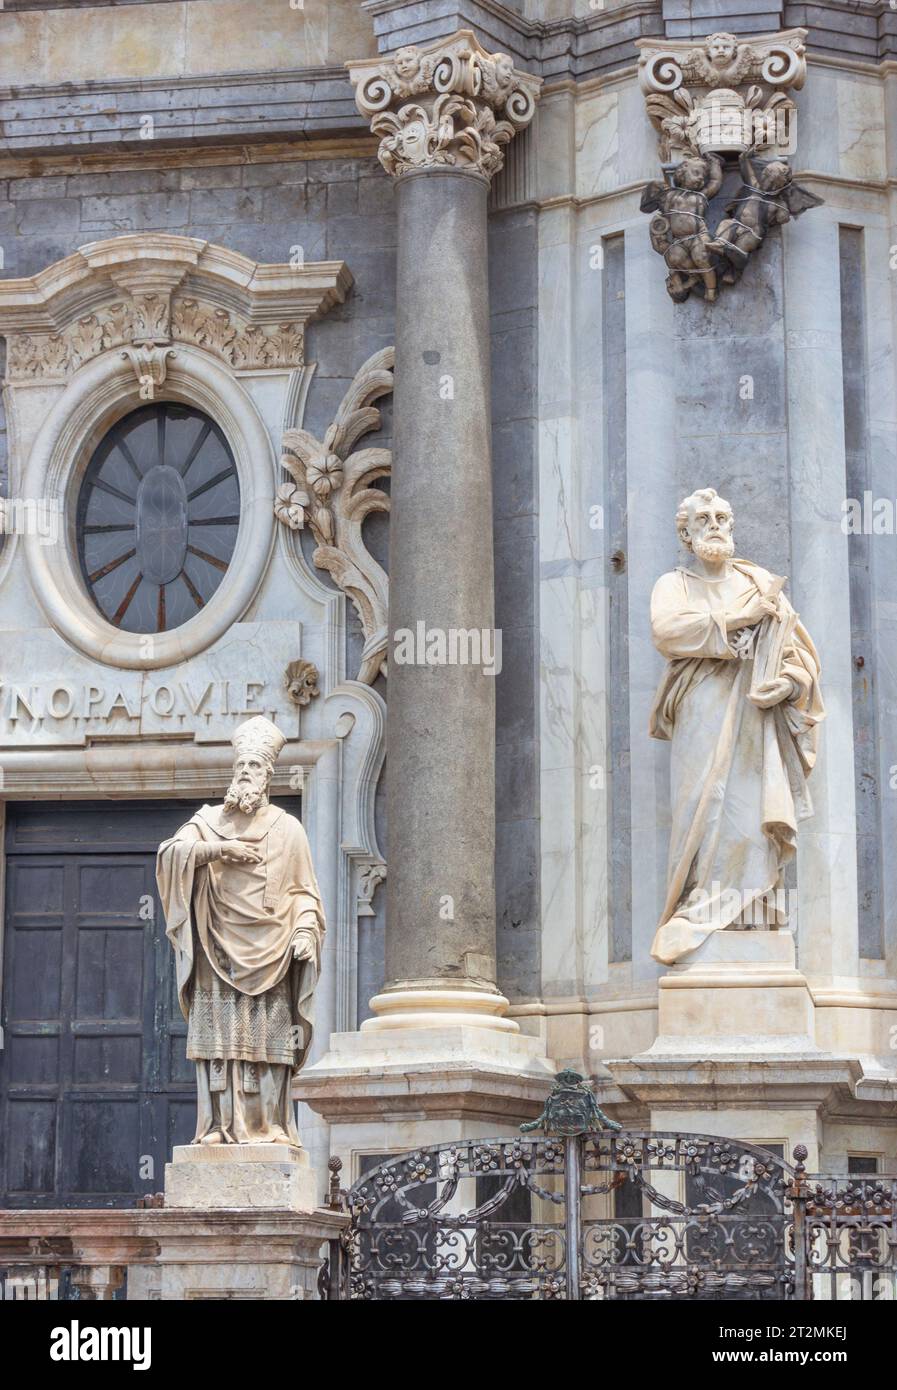 Die Metropolitan Cathedral von Saint Agatha, Catania, Sizilien, Italien. Statuen an der Fassade. Catania gehört zum UNESCO-Weltkulturerbe. Stockfoto